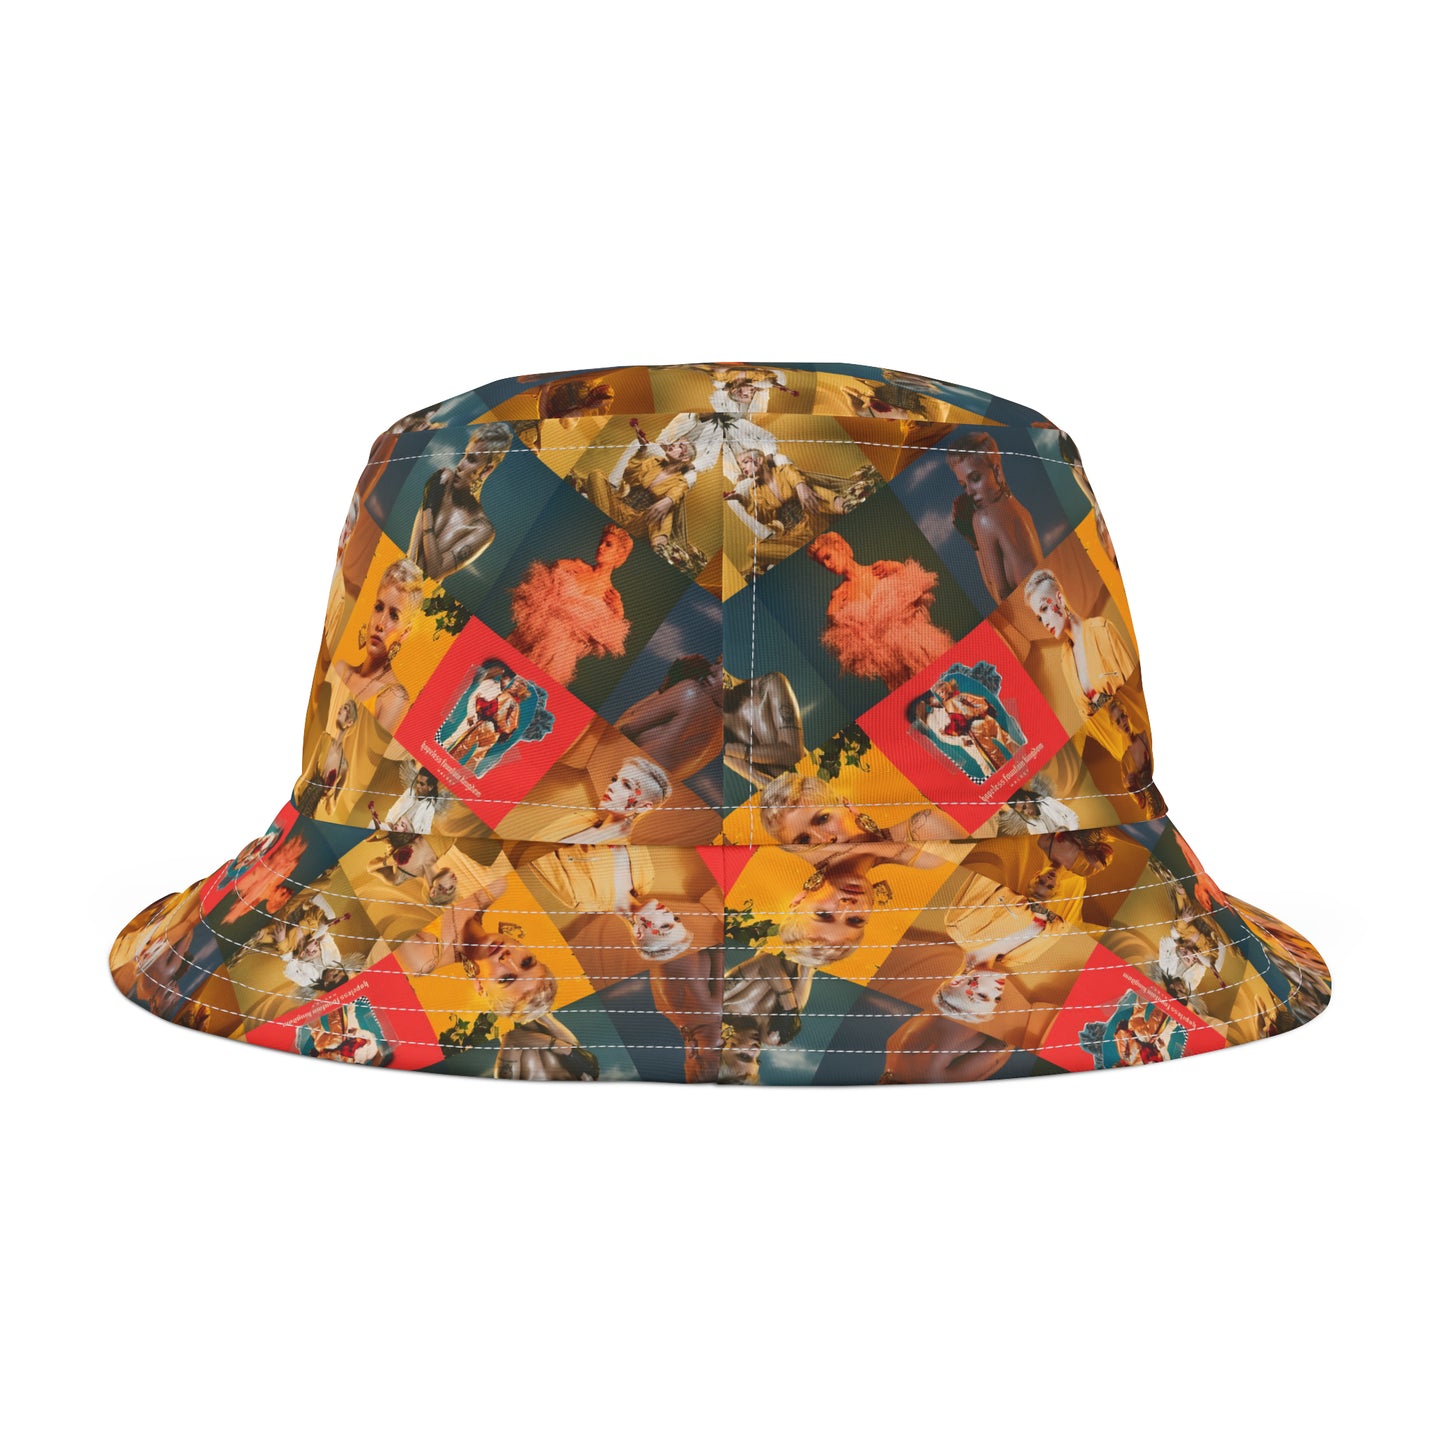 Halsey Hopeless Fountain Kingdom Mosaic Bucket Hat